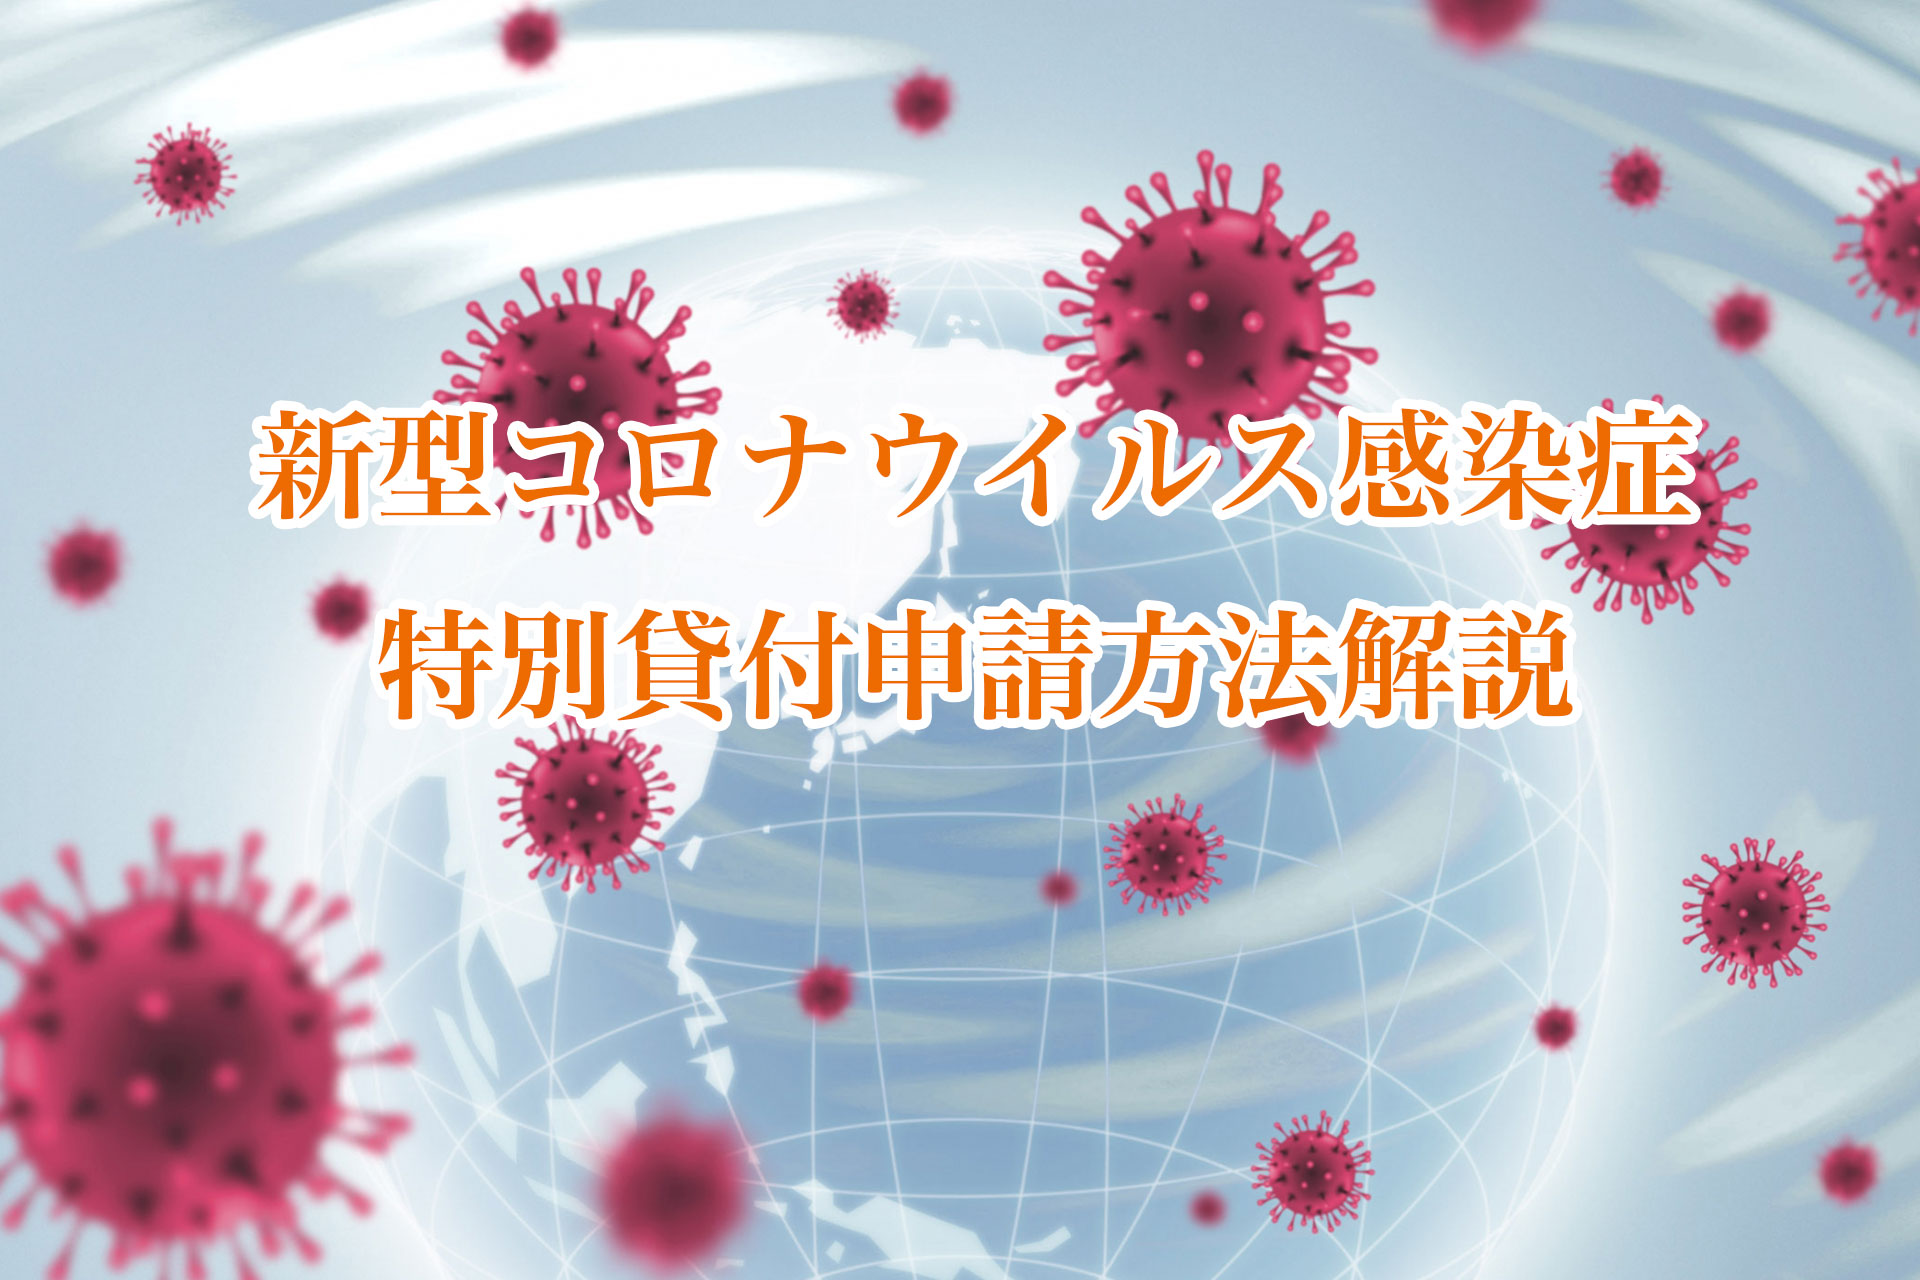 新型コロナウイルス感染症特別貸付申請方法解説